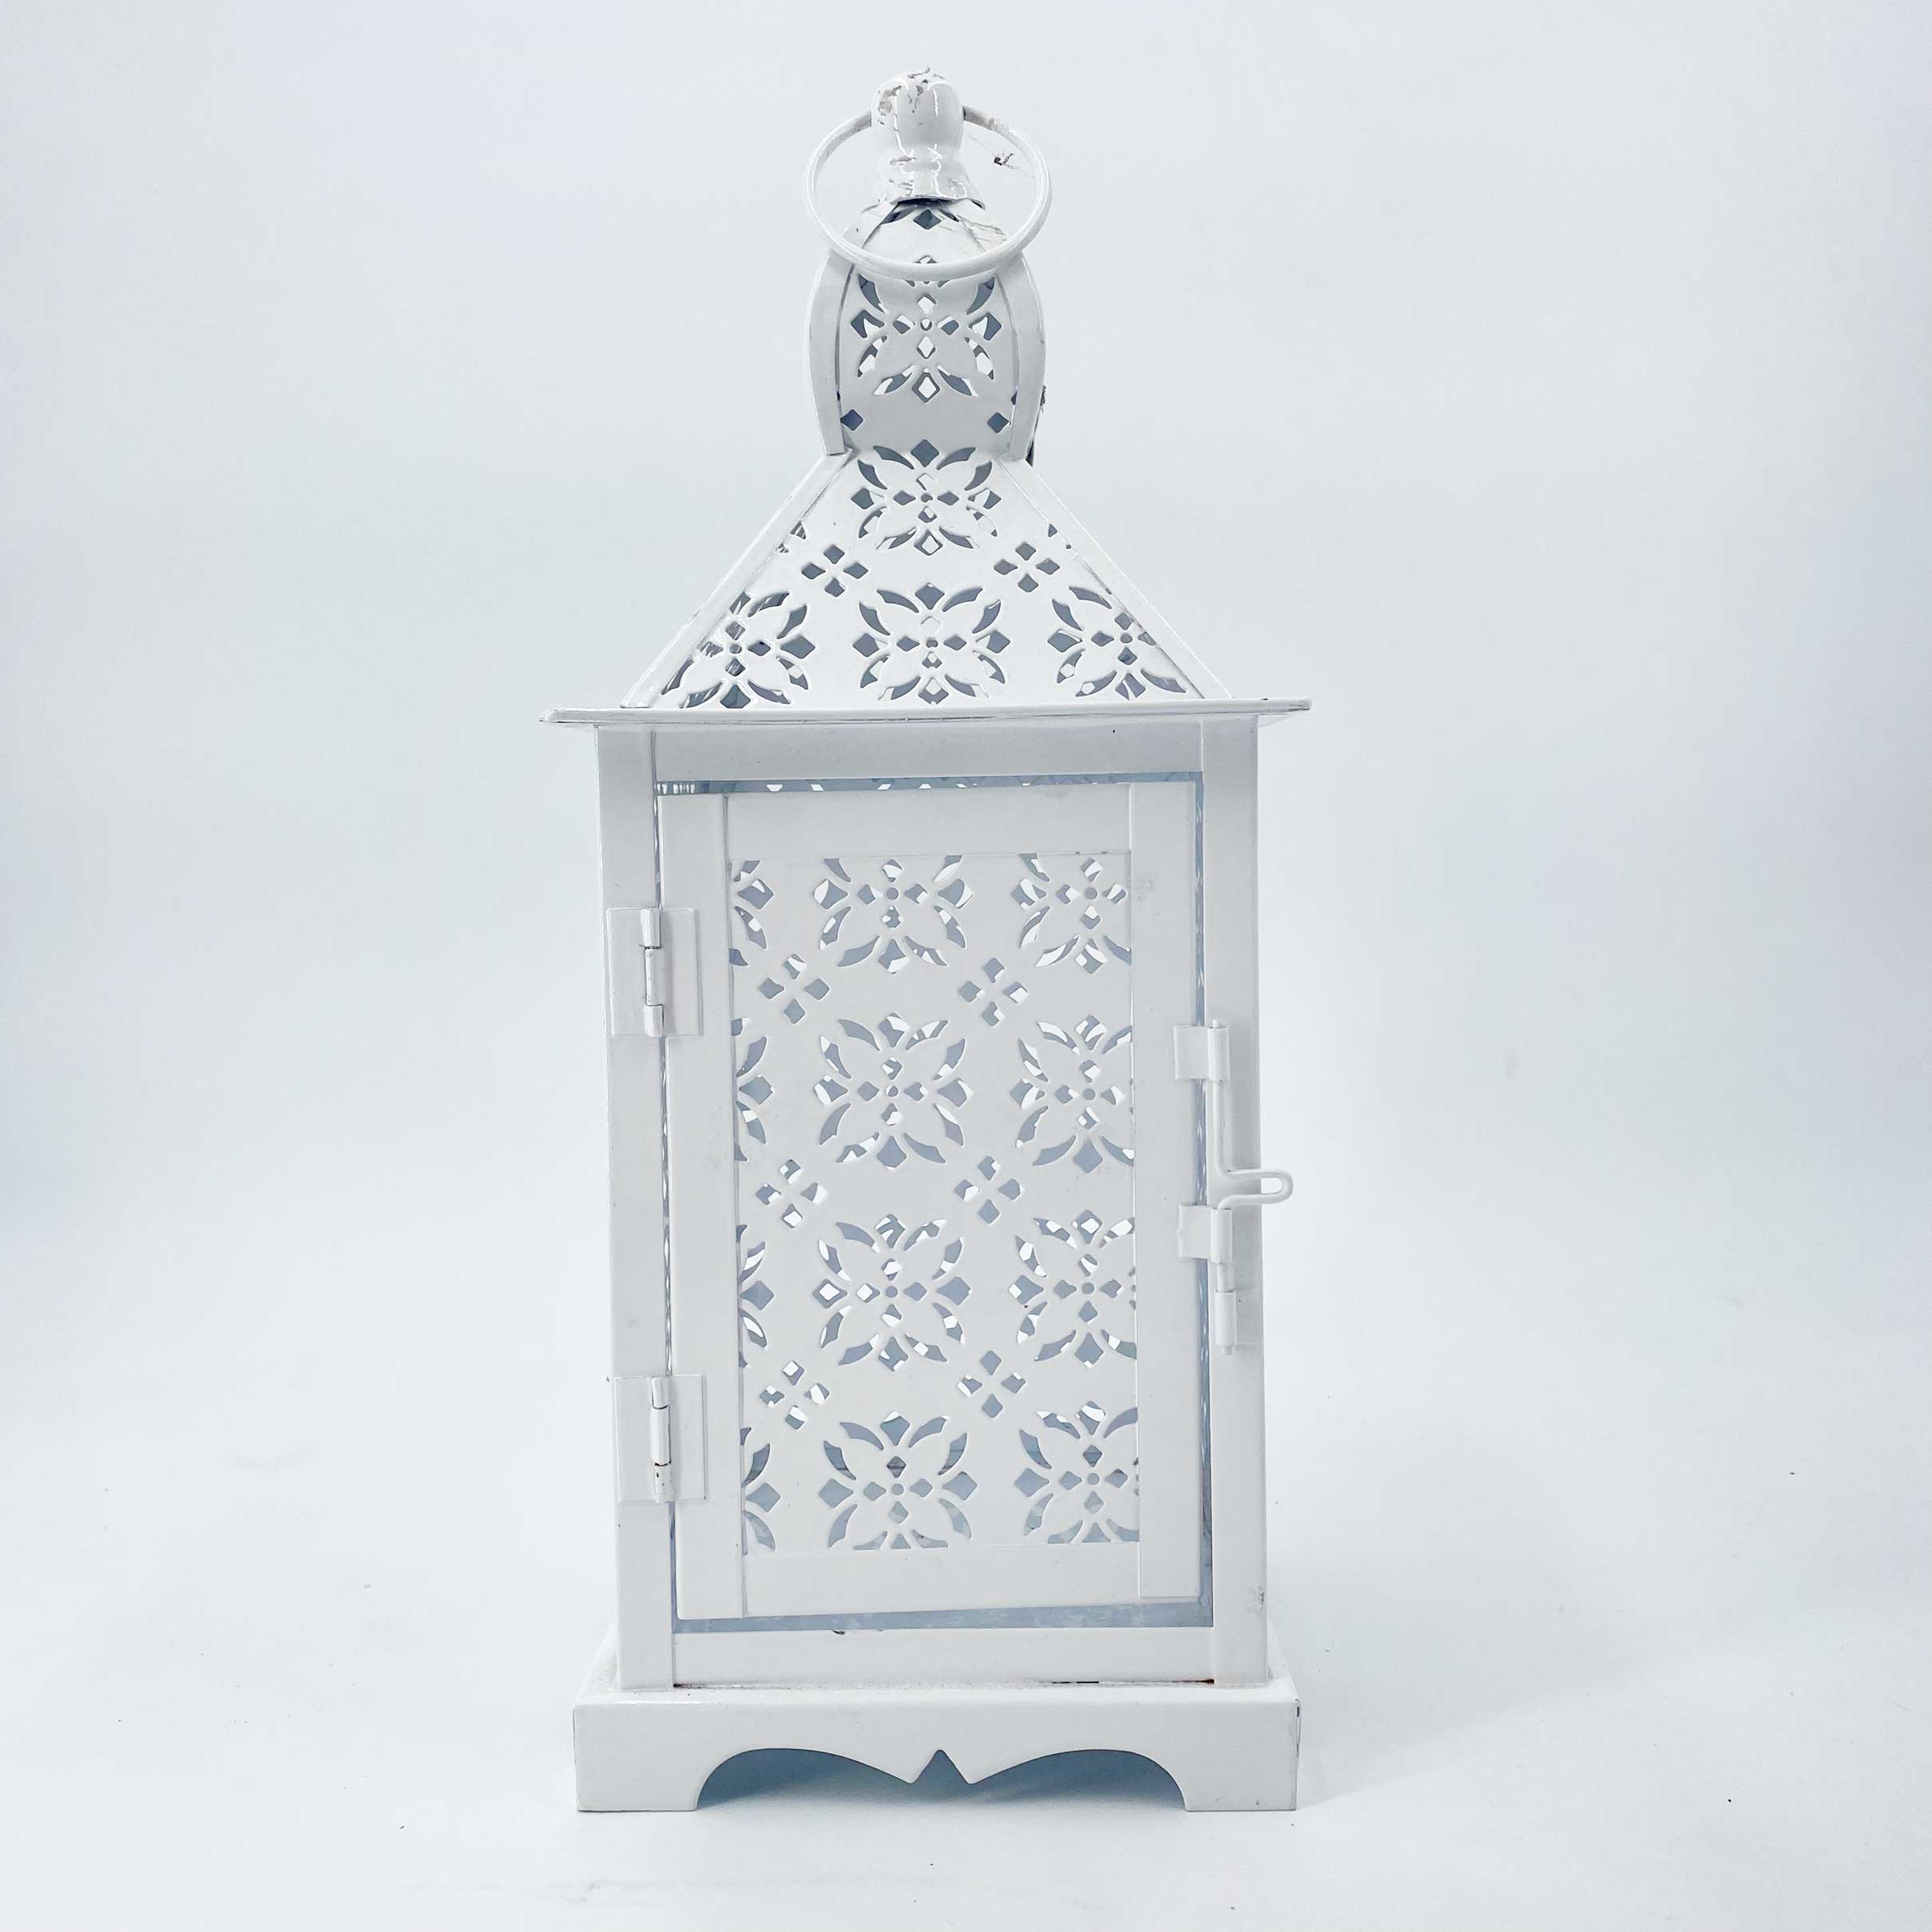 Petite lanterne blanche en métal avec bougie led truglow à piles